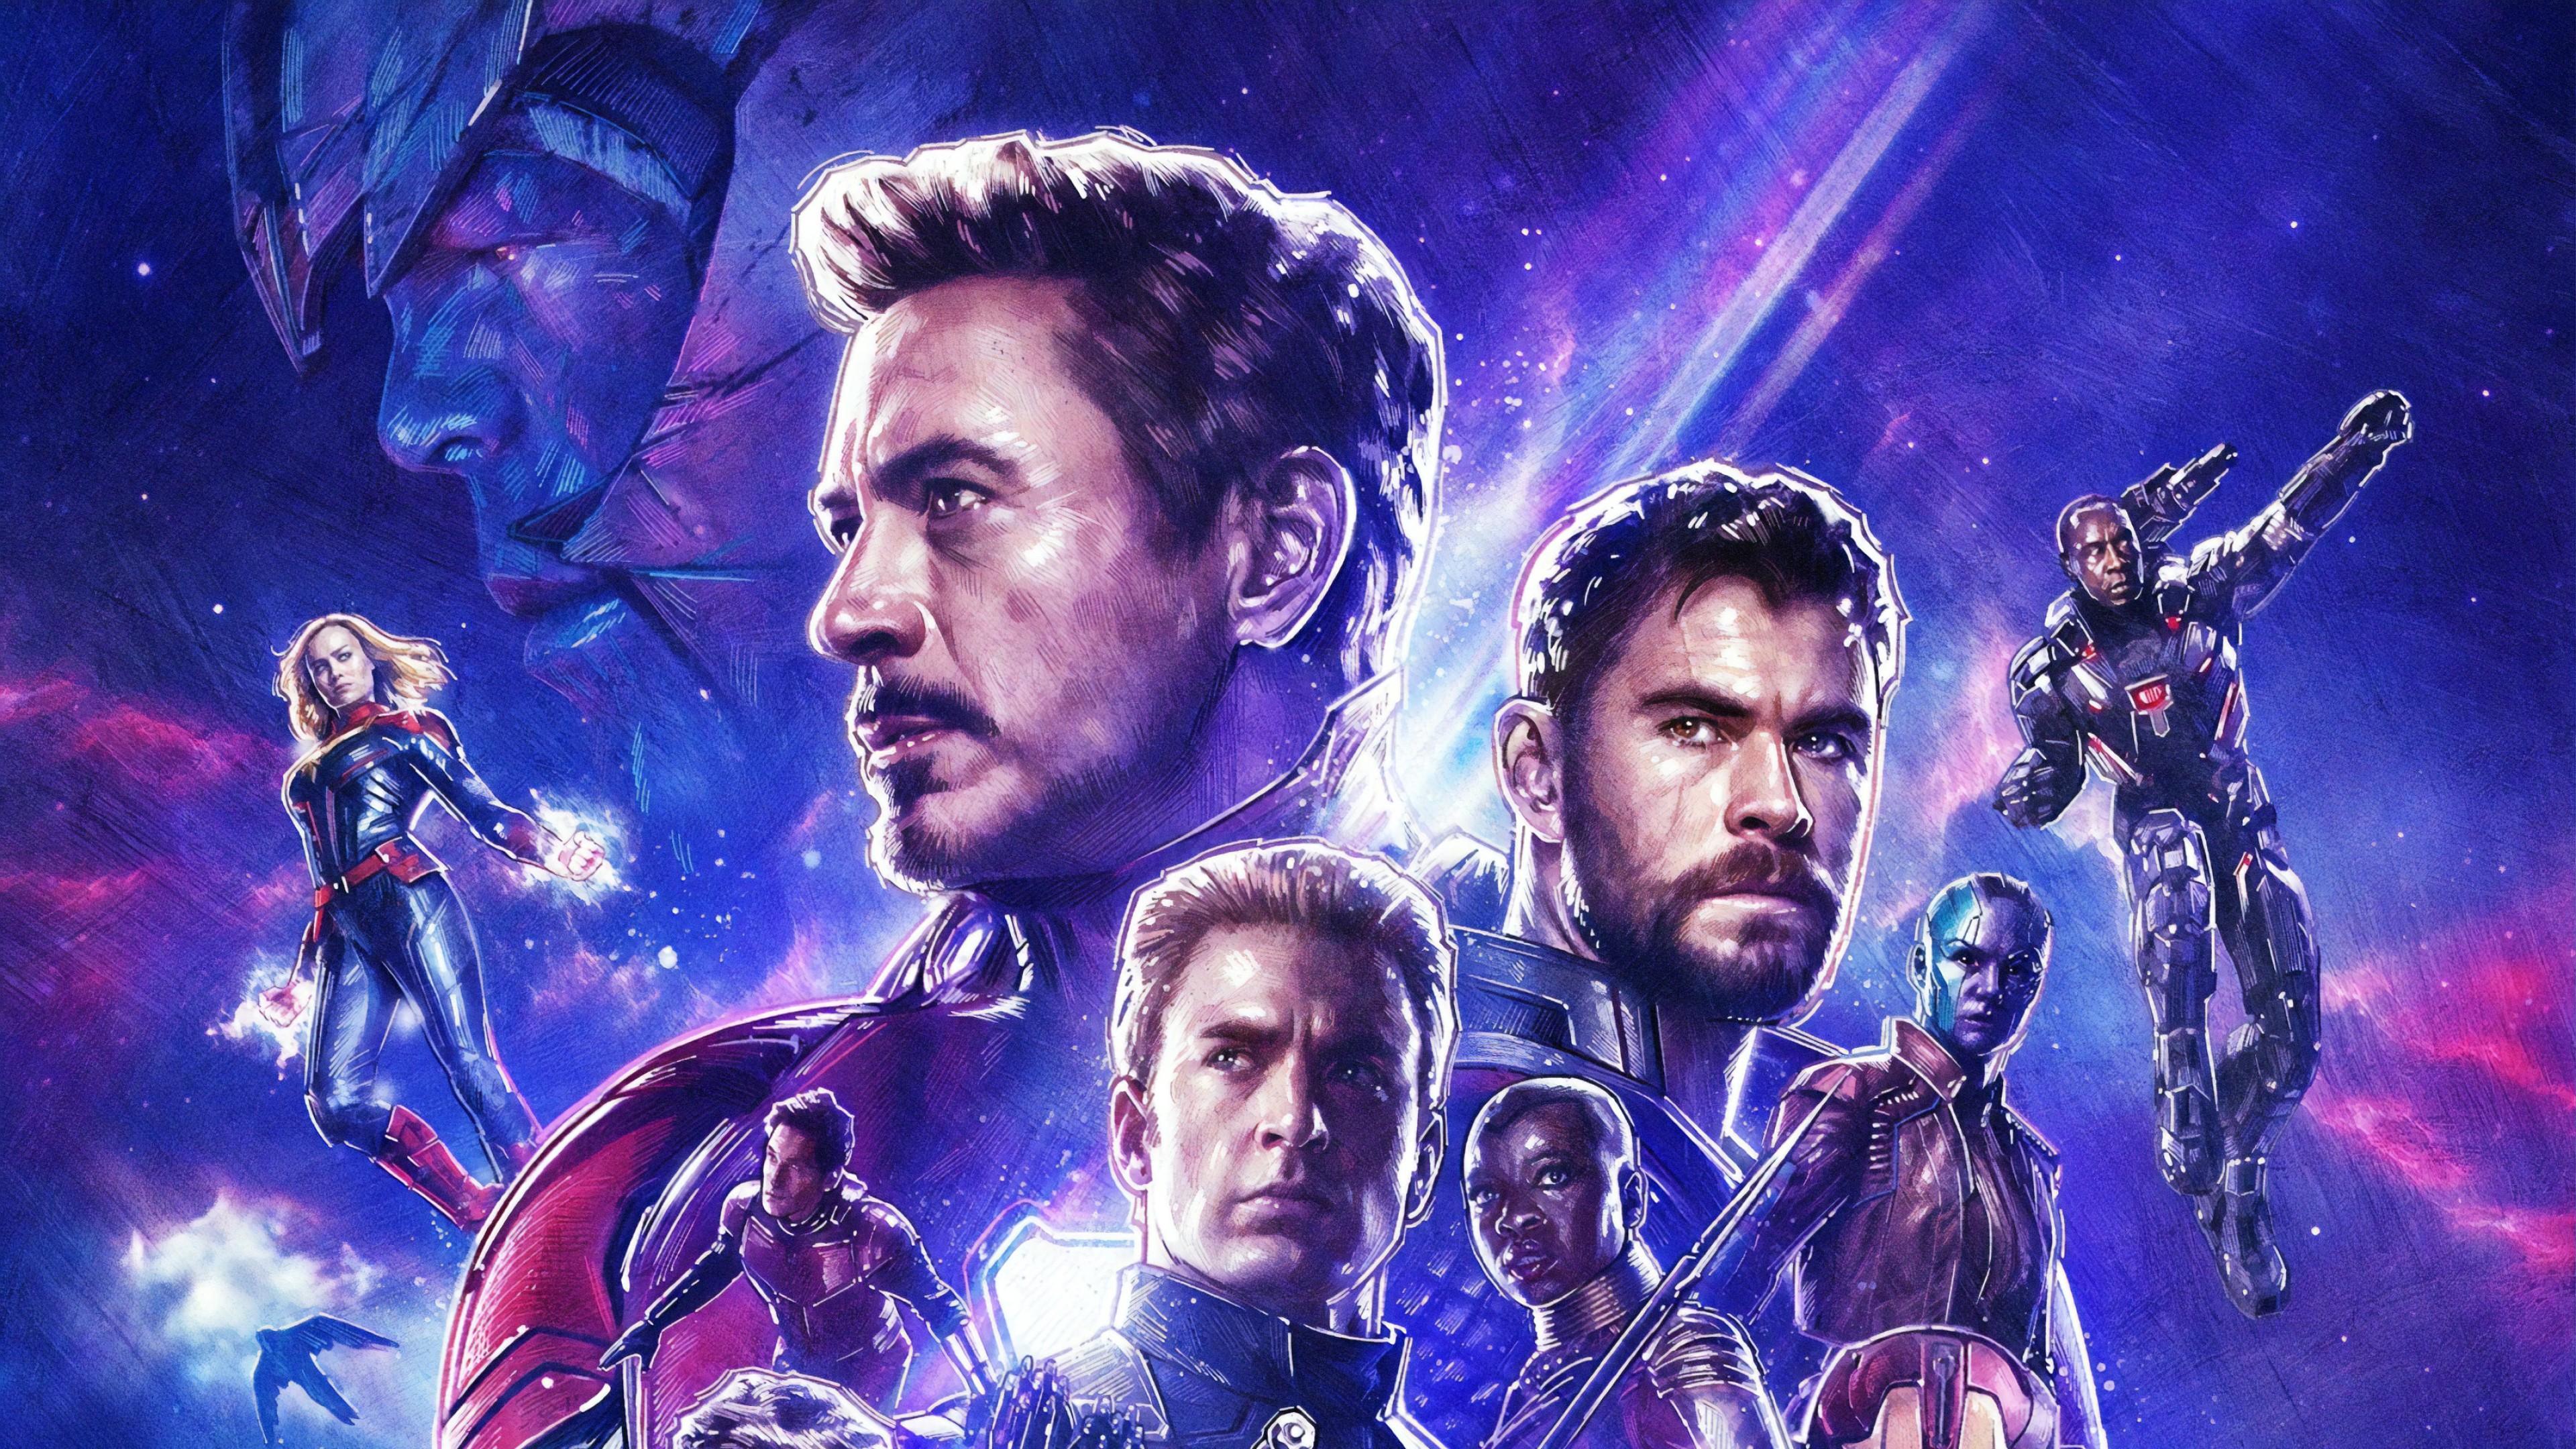 Avengers Endgame 2019 Poster 1 2 4K 3840x2160 Ultra HD Wallpaper